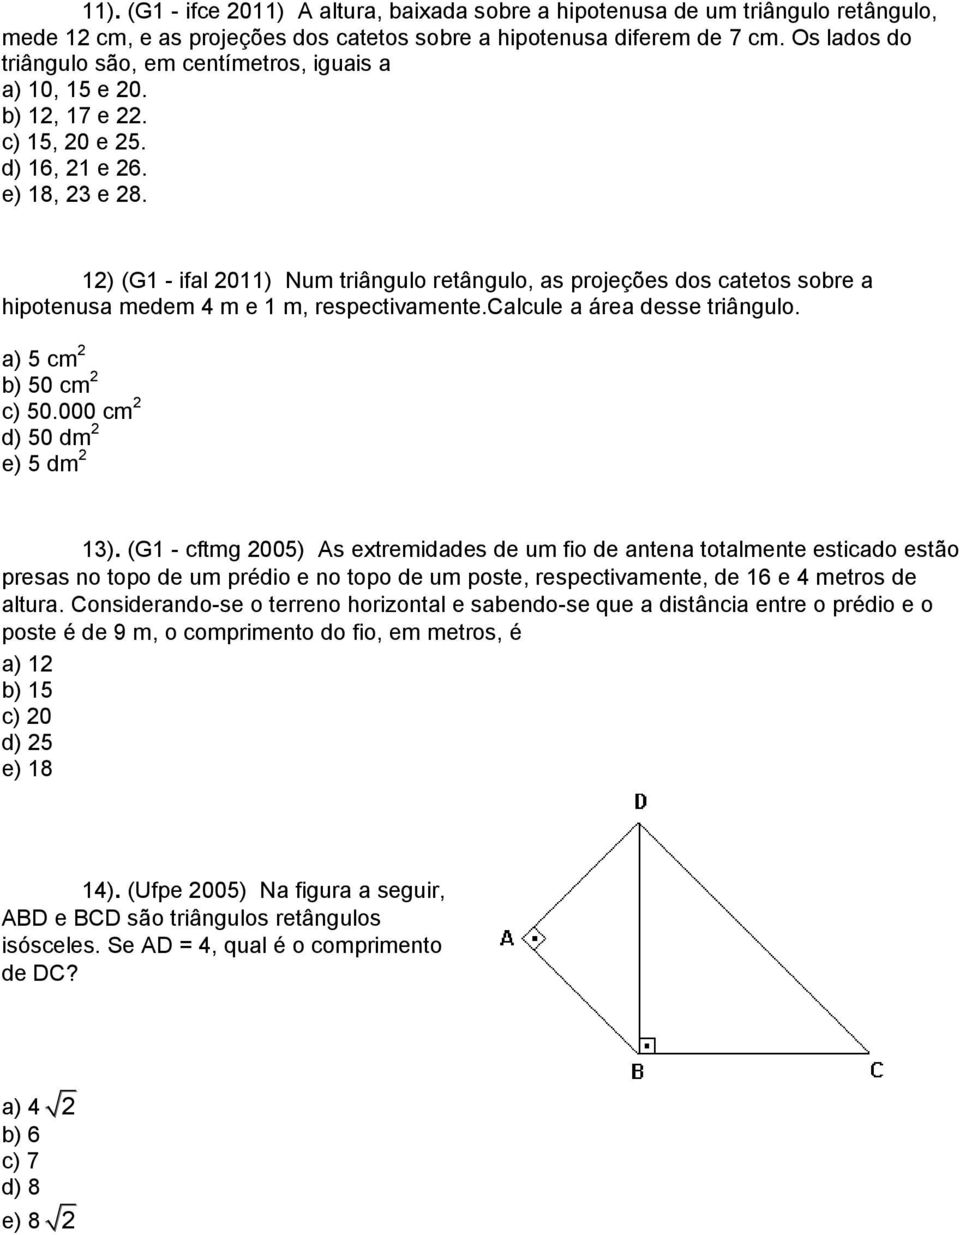 12) (G1 - ifal 2011) Num triângulo retângulo, as projeções dos catetos sobre a hipotenusa medem 4 m e 1 m, respectivamente.calcule a área desse triângulo. a) 5 cm 2 b) 50 cm 2 c) 50.